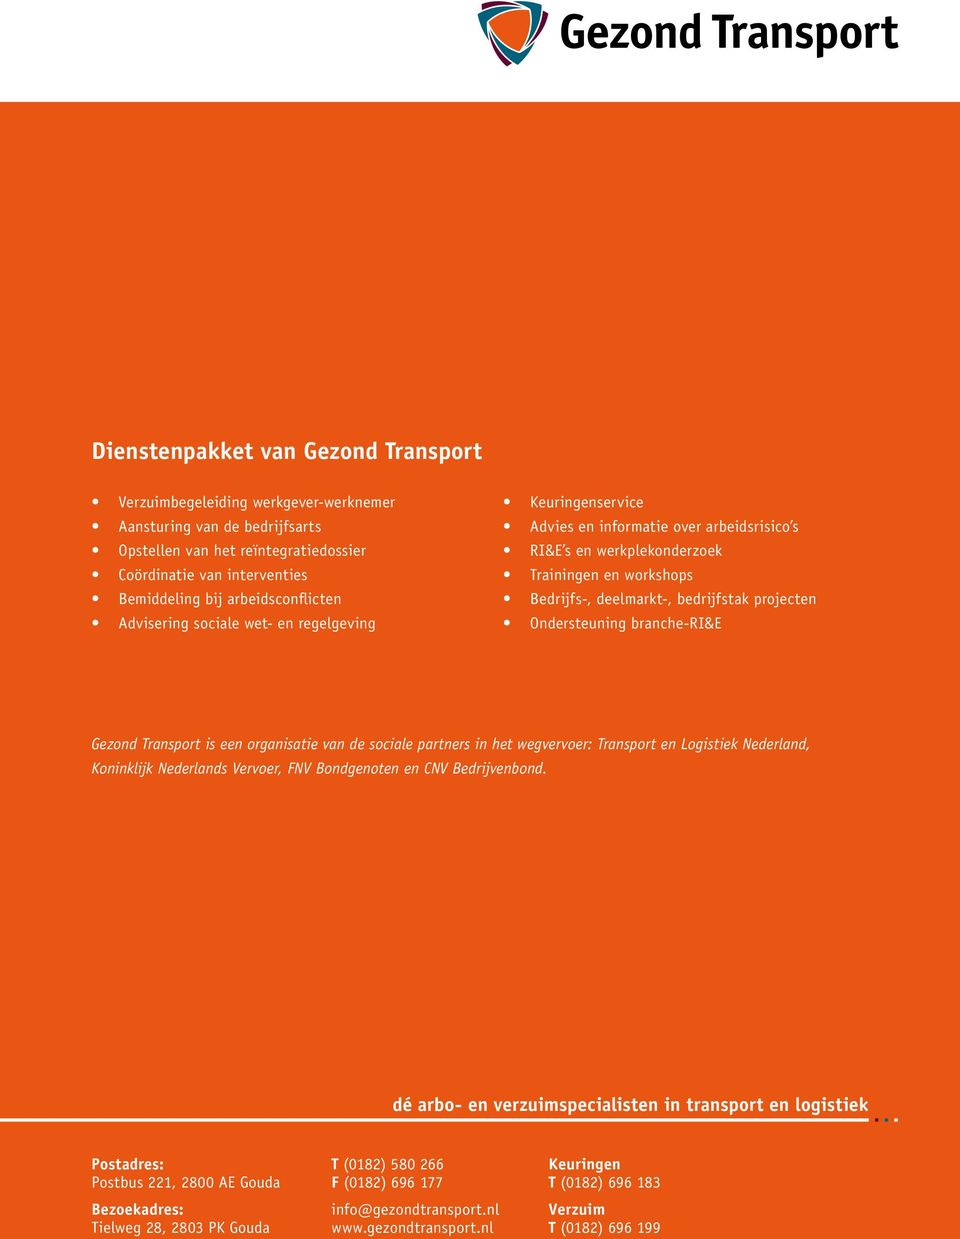 bedrijfstak projecten Ondersteuning branche-ri&e Gezond Transport is een organisatie van de sociale partners in het wegvervoer: Transport en Logistiek Nederland, Koninklijk Nederlands Vervoer, FNV